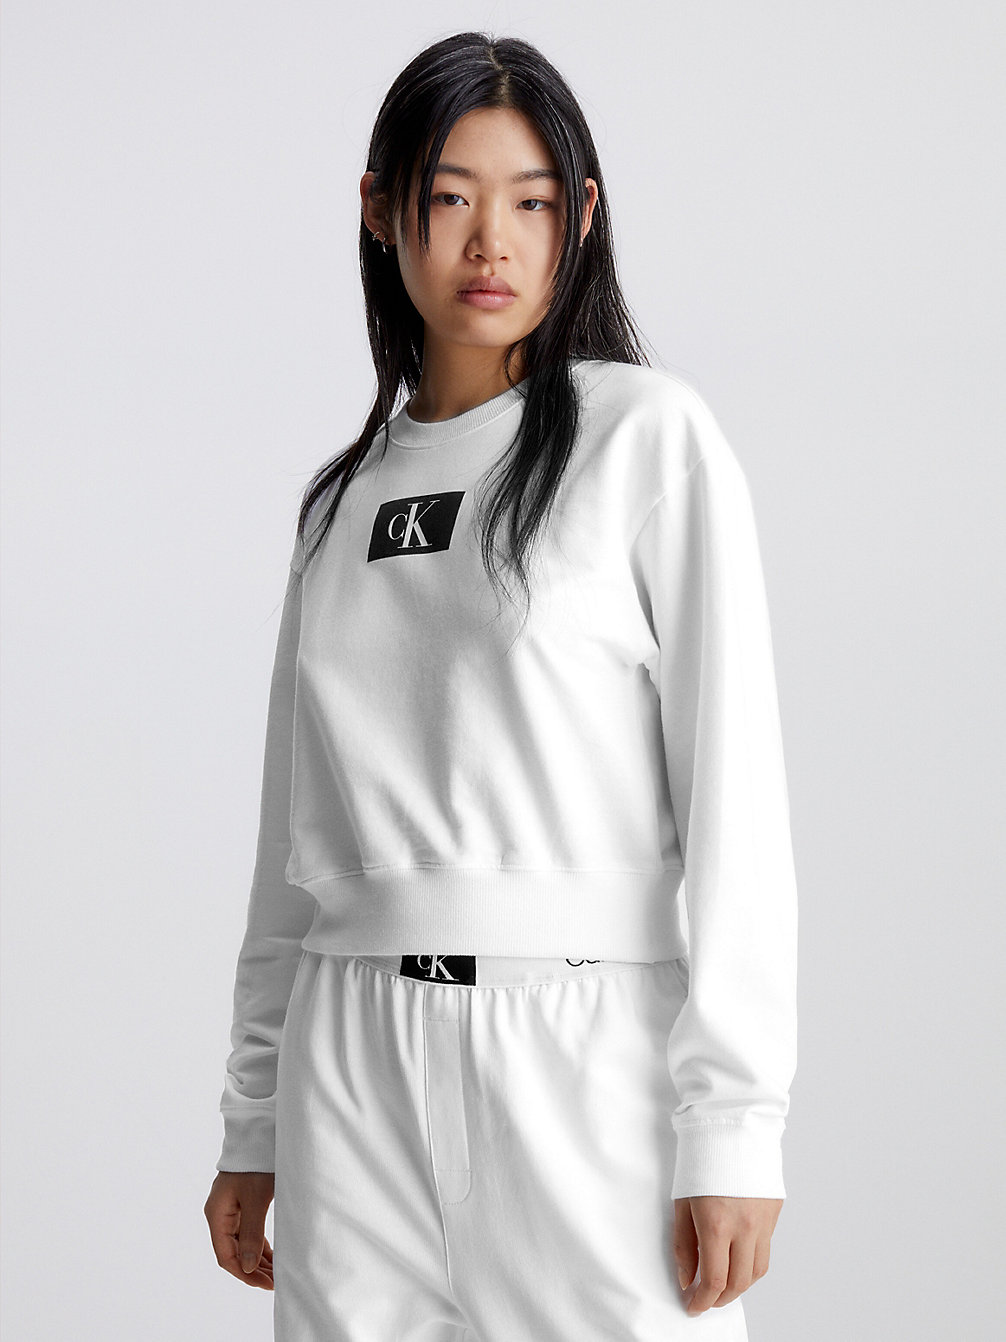 WHITE Lounge Sweatshirt - Ck96 undefined women Calvin Klein